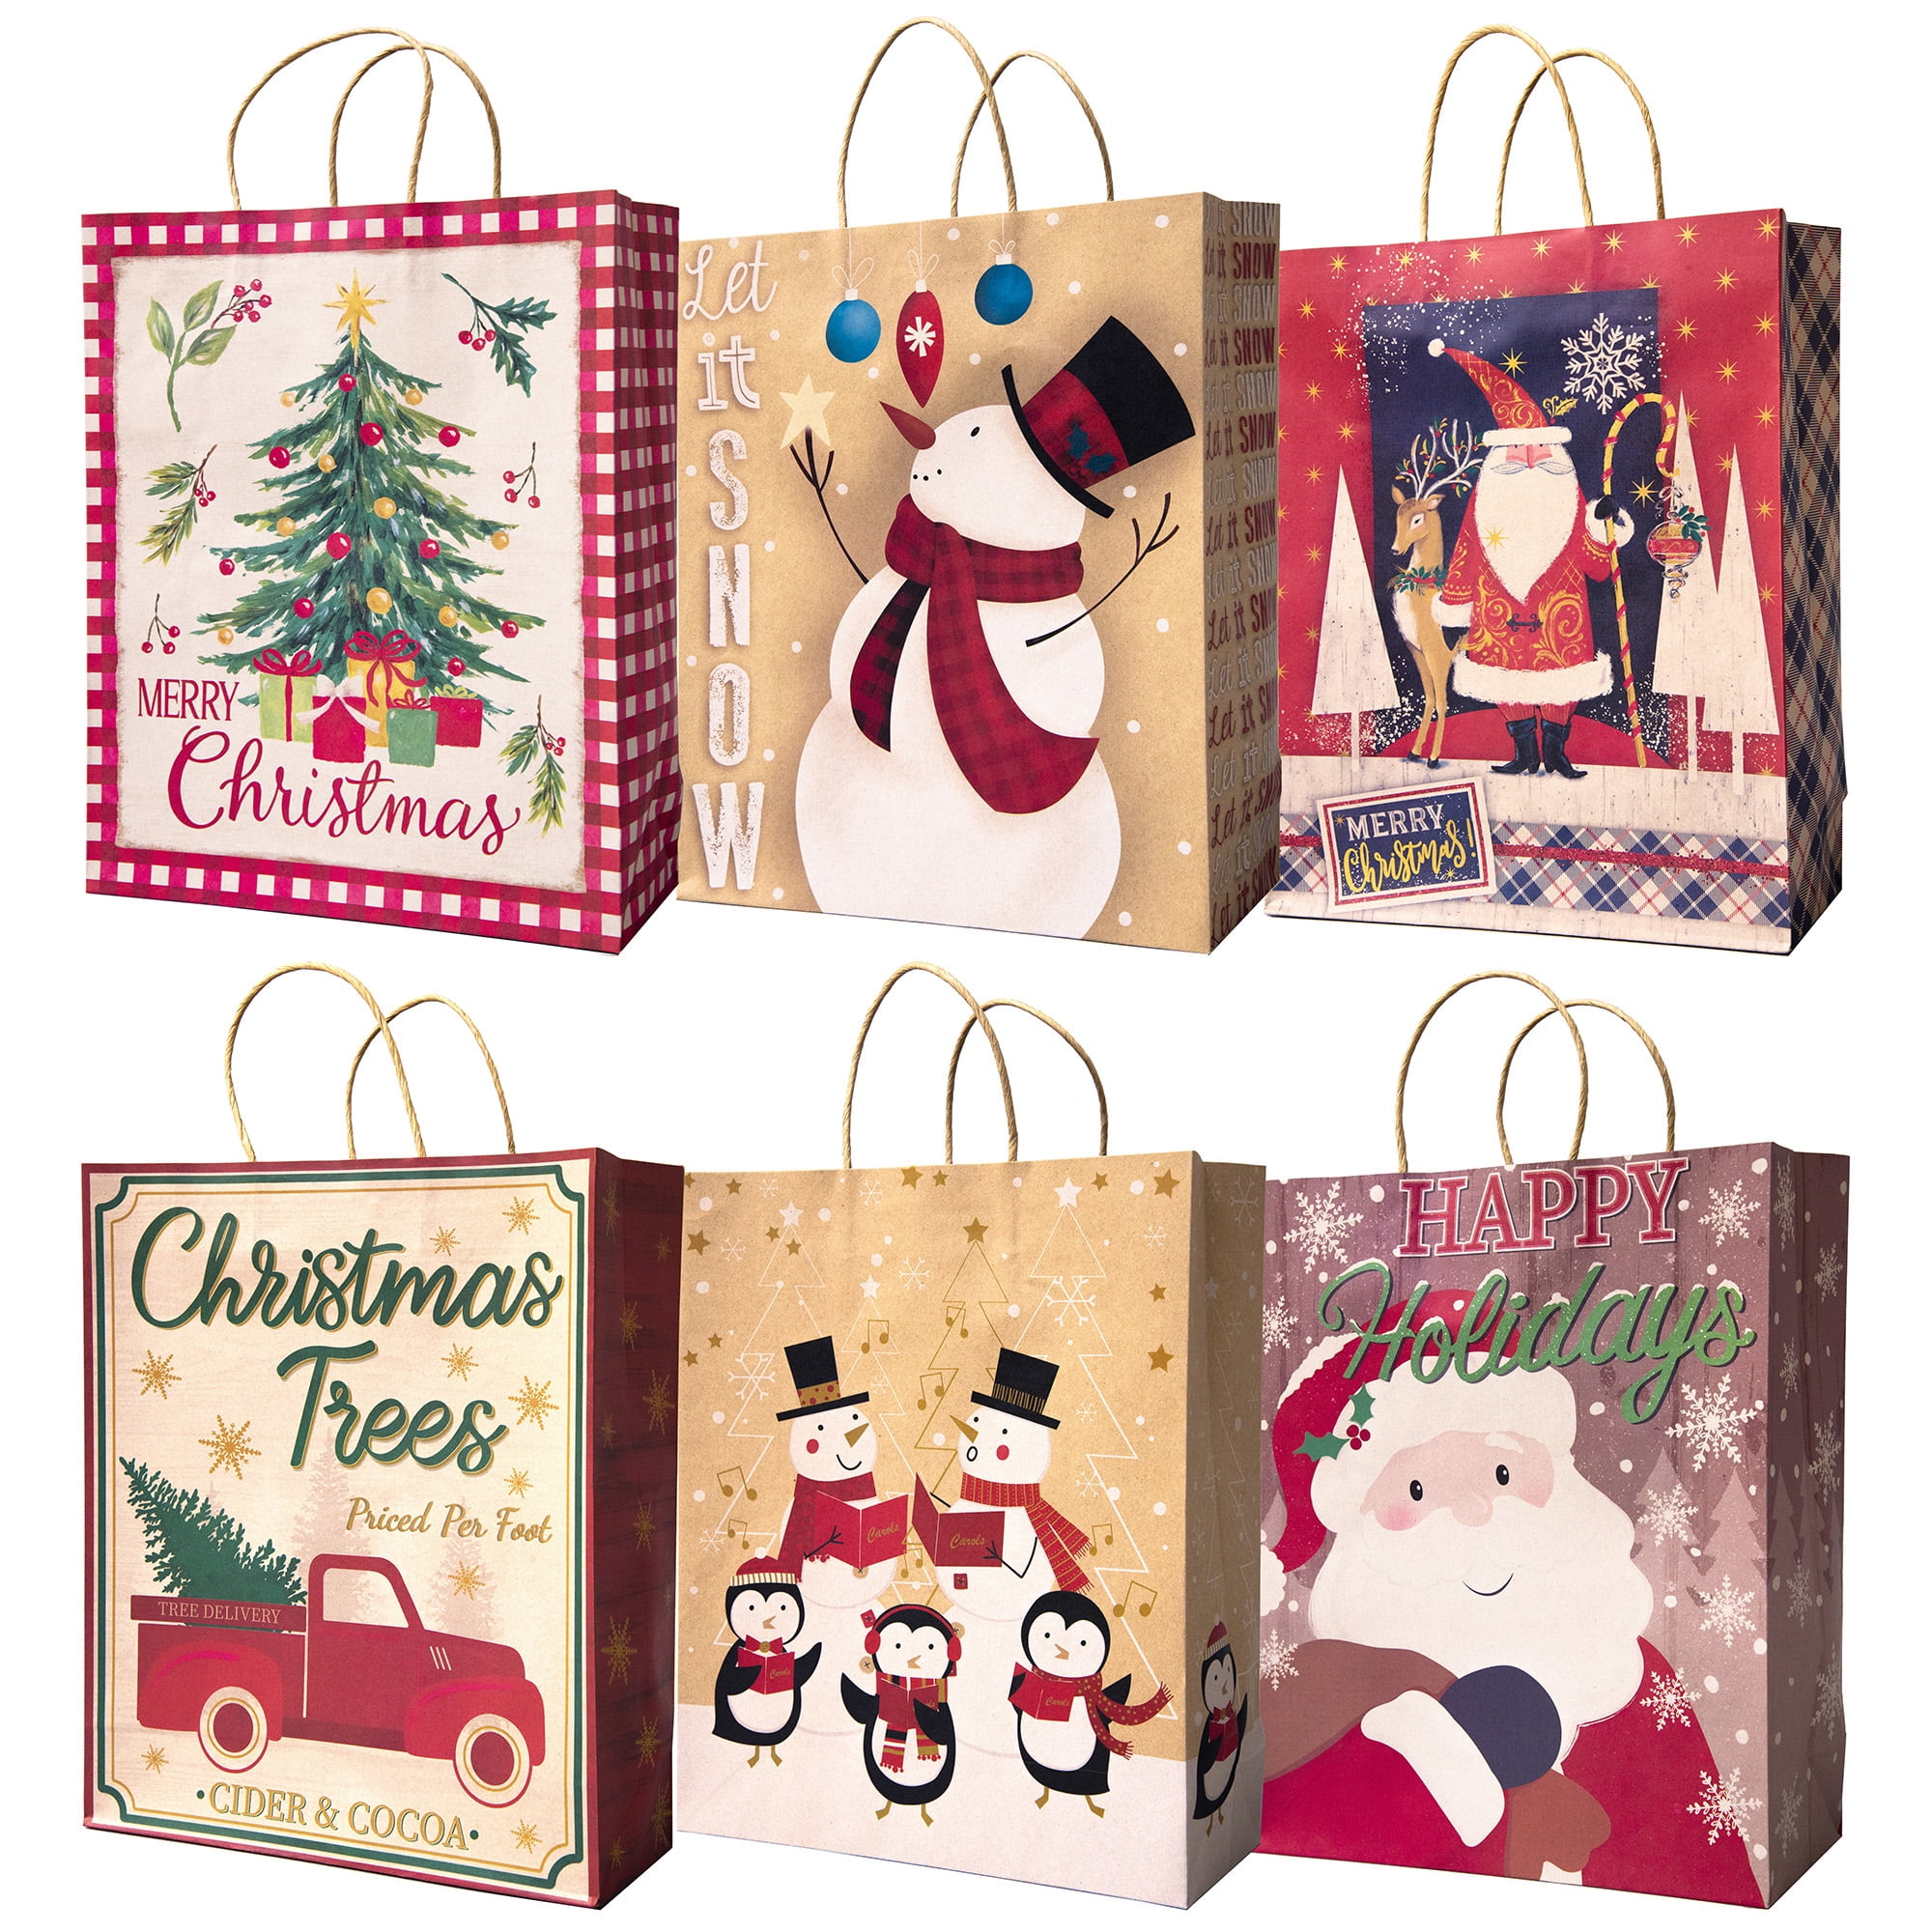 Amazoncom 6pcs Large Christmas Gift Bag for Presents Jumbo Plastic Goody Bag  Giant Gift Bag Assorted Size 49X355 and 364 X 345 with Gift Tag Card  for Christmas Big Gift Wrapping Bag 